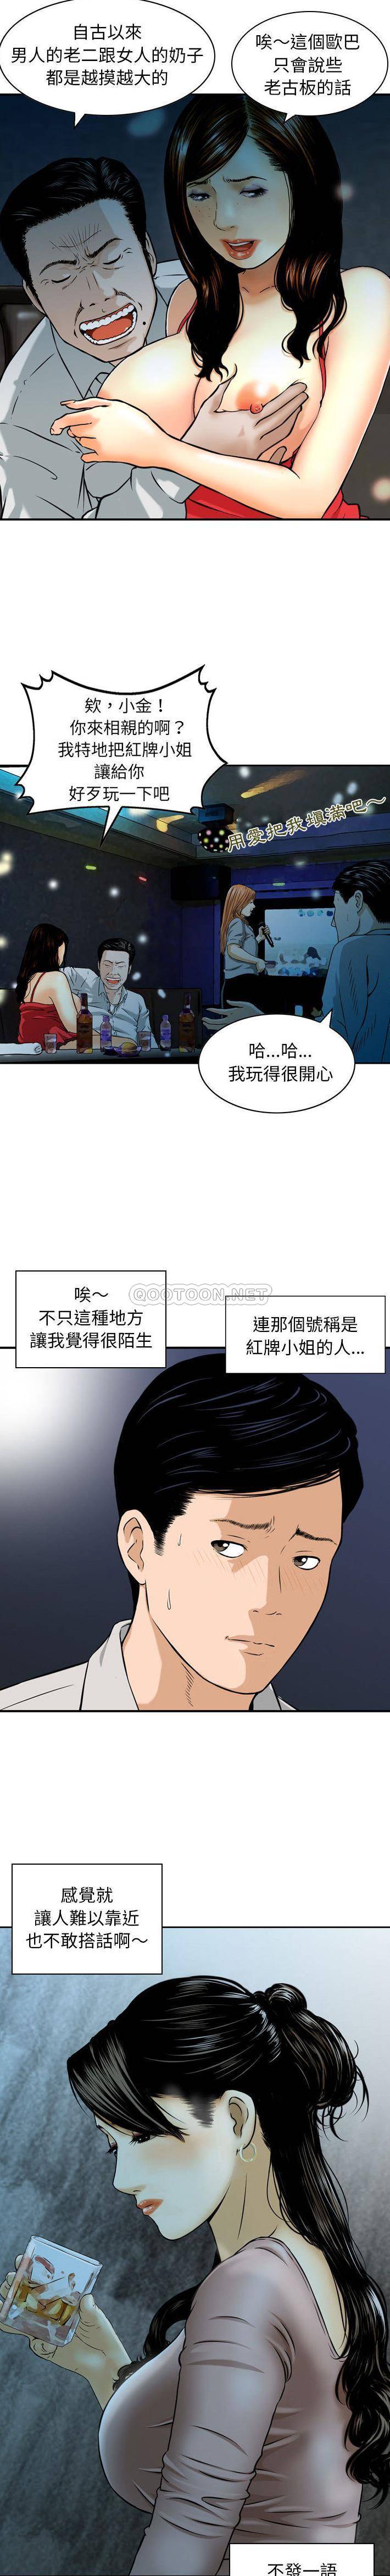 韩国污漫画 金錢的魅力 第1话 14